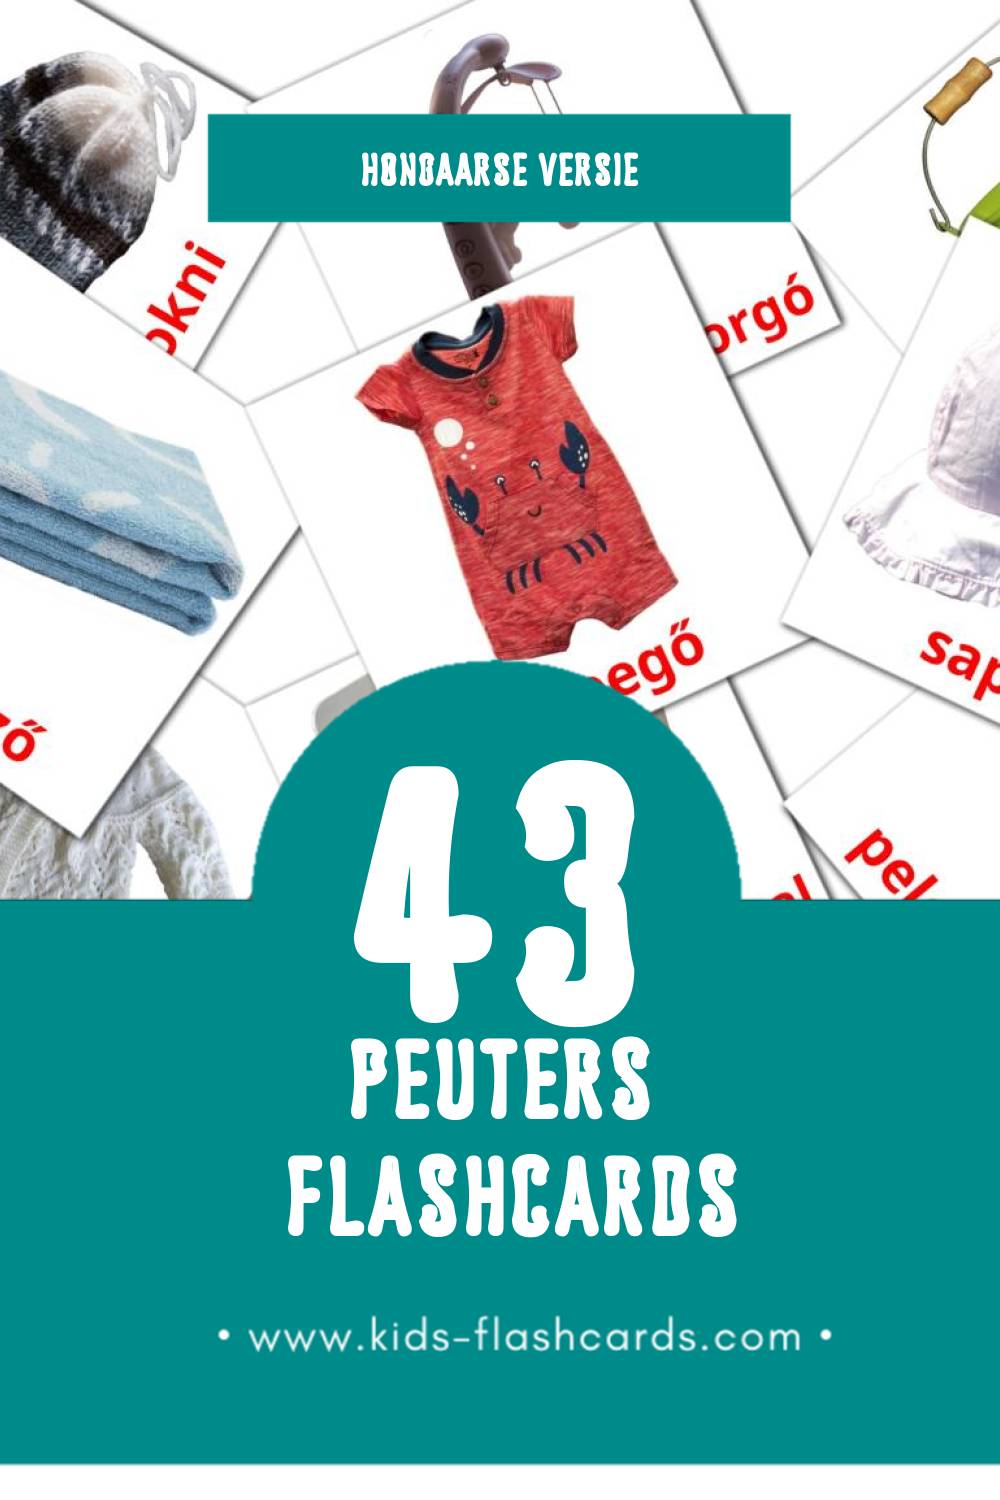 Visuele Hungarian (Magyar) Flashcards voor Kleuters (43 kaarten in het Hongaars)